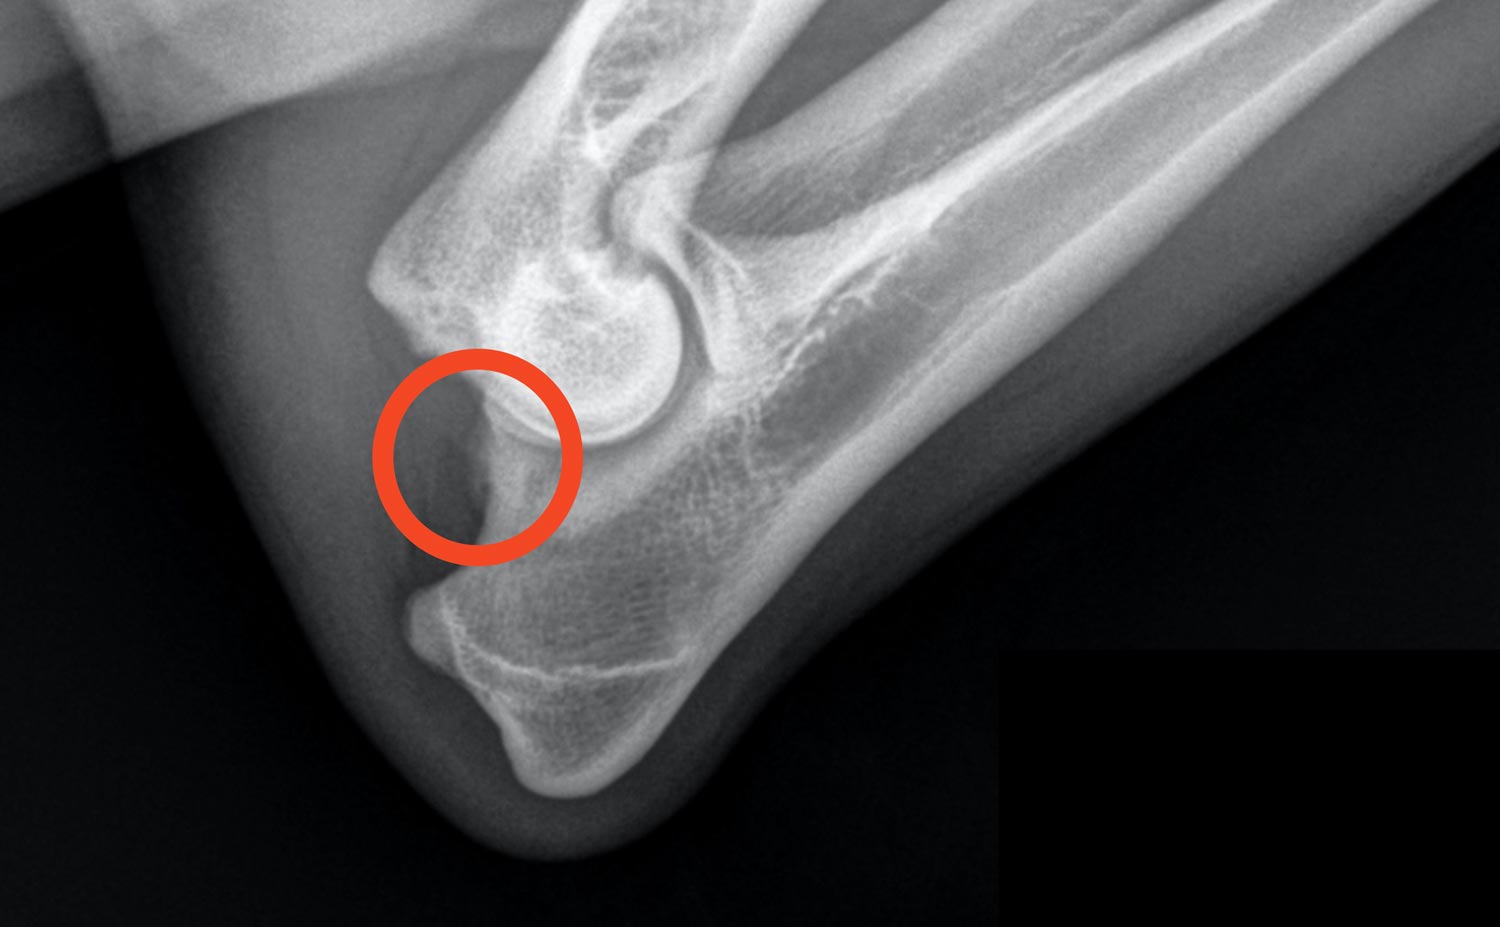 Golden Retriever Breeder, DJD1 elbow dysplasia